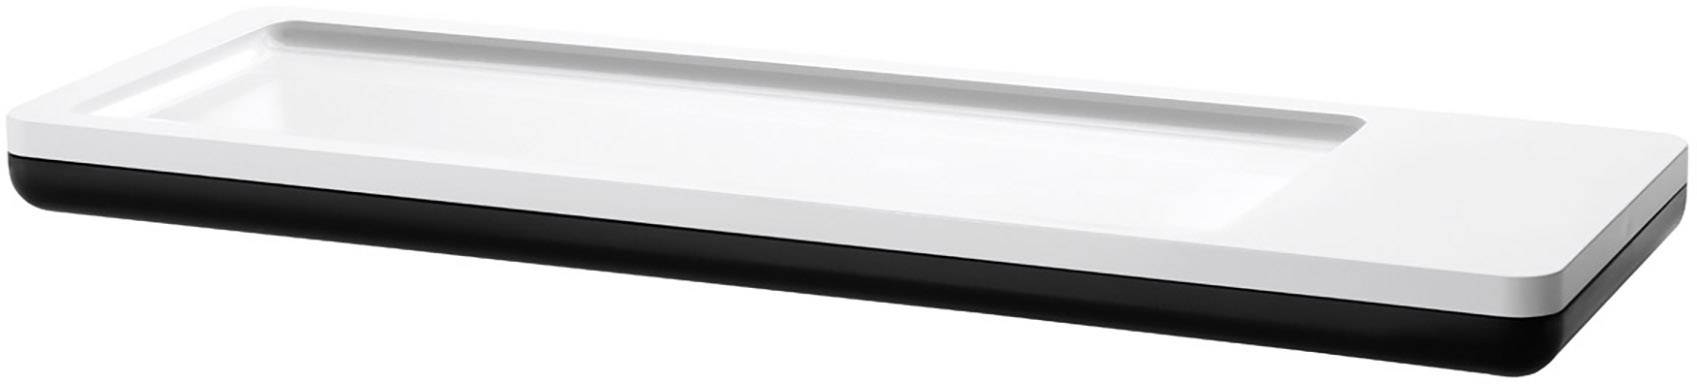 HAN i-Line 17650-13 Pen Tray 1 Compartment Plastic 280 x 18 x 95 mm Black